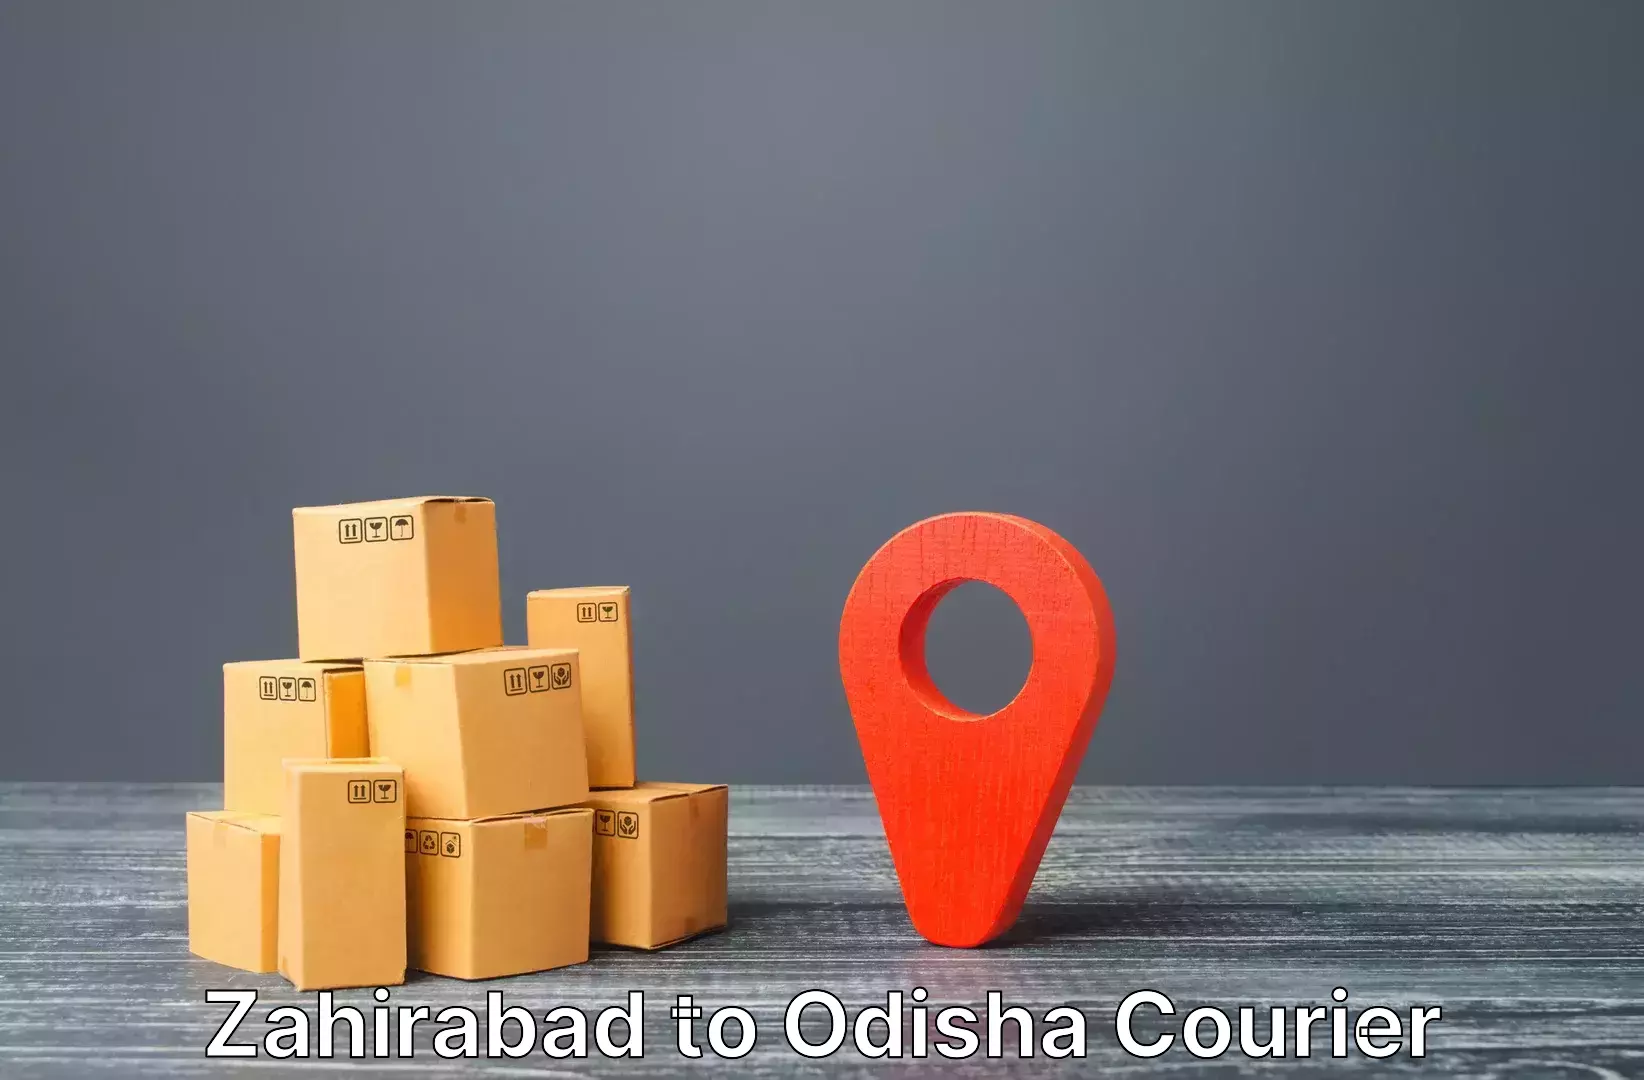 Luggage delivery news in Zahirabad to Kuchinda